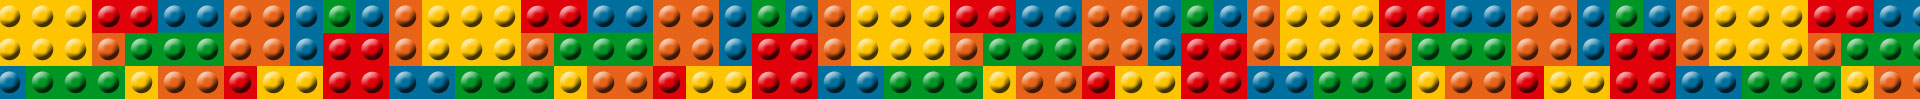 La Perla Negra Lego (4184)